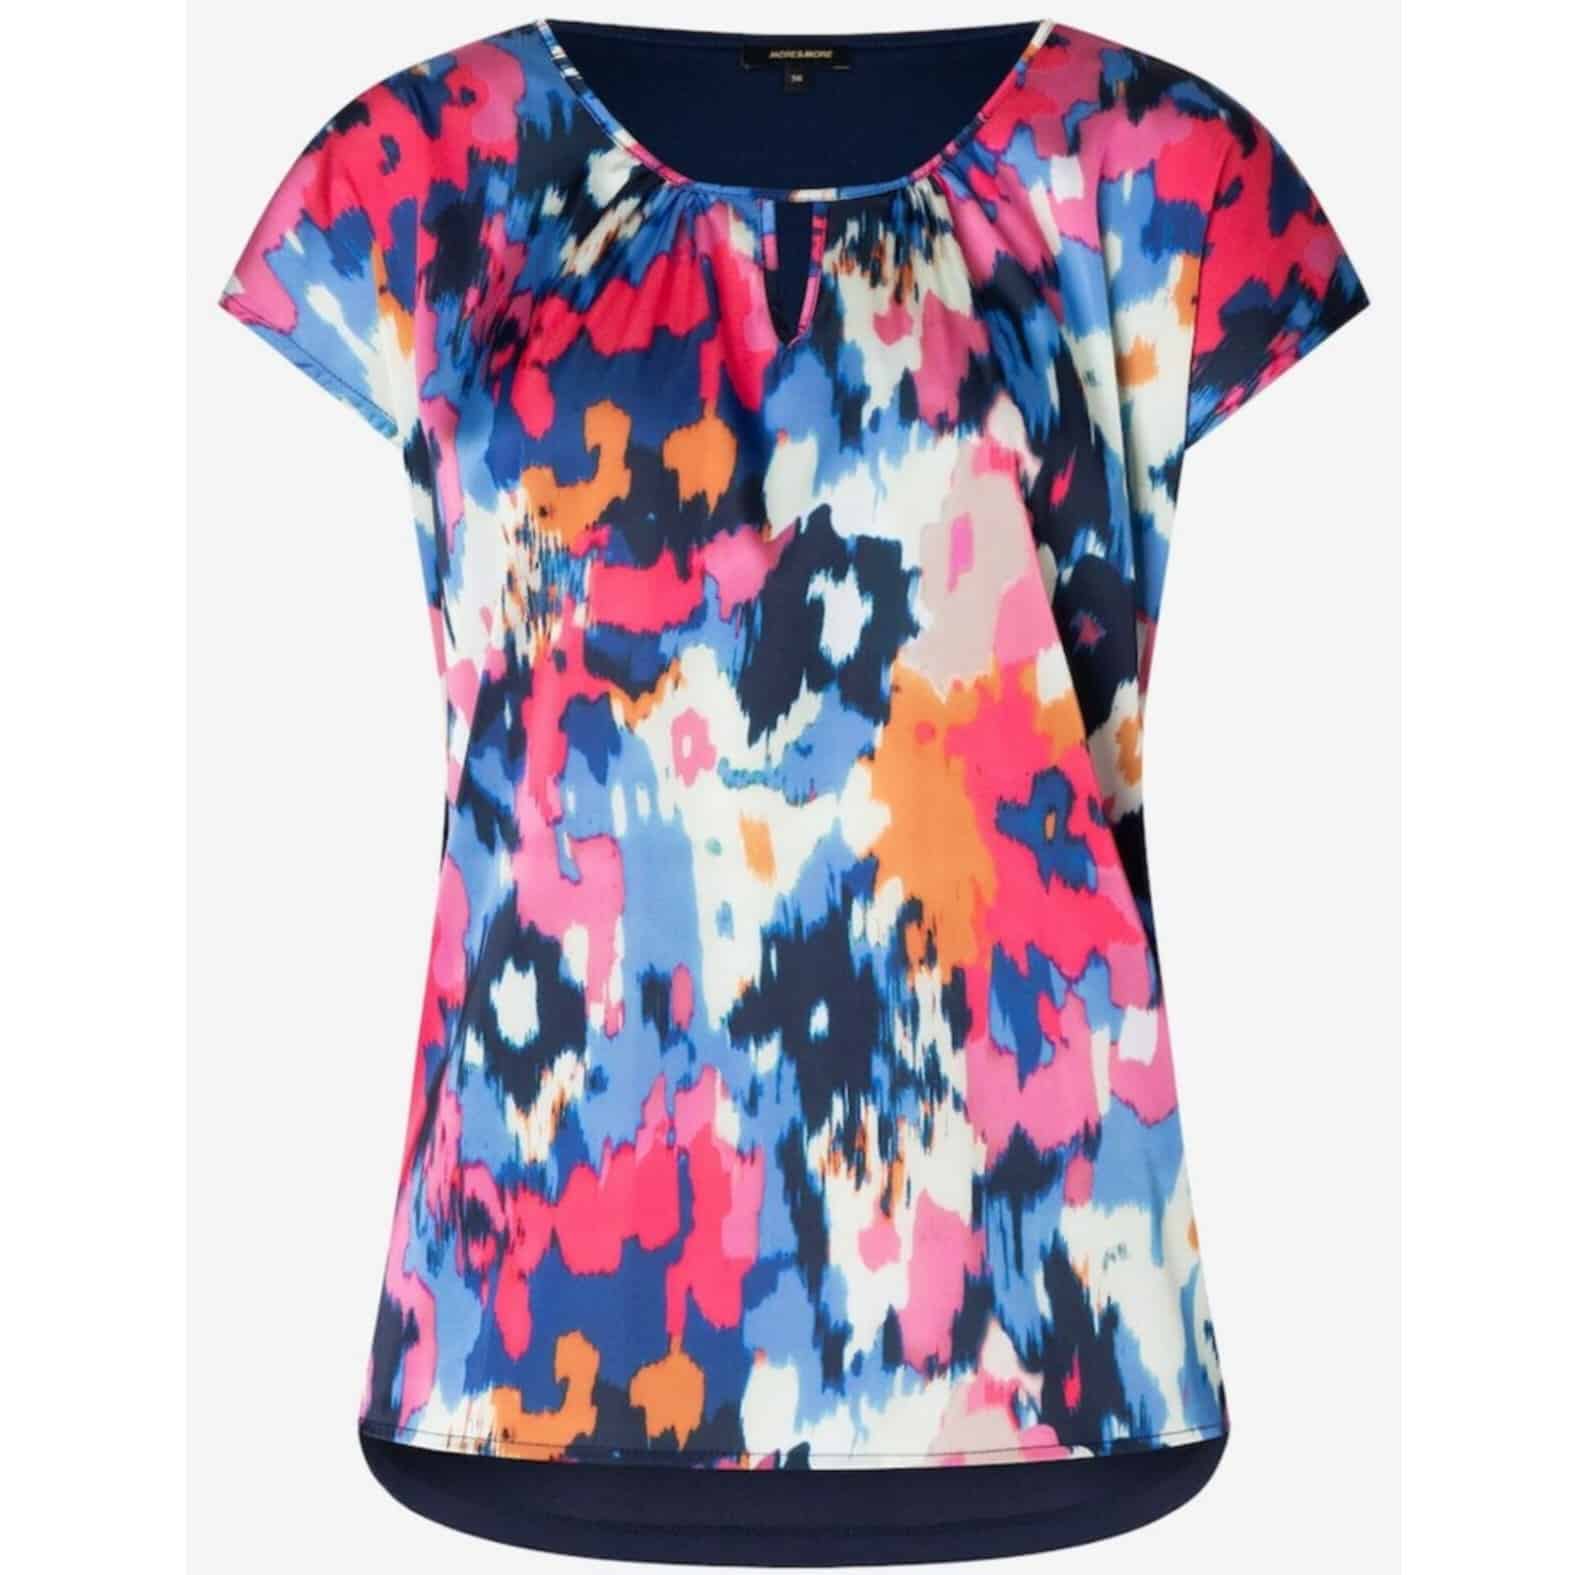 Blusenshirt mit abstraktem Print in bunten Farben mit angeschnittenem Arm von More & More